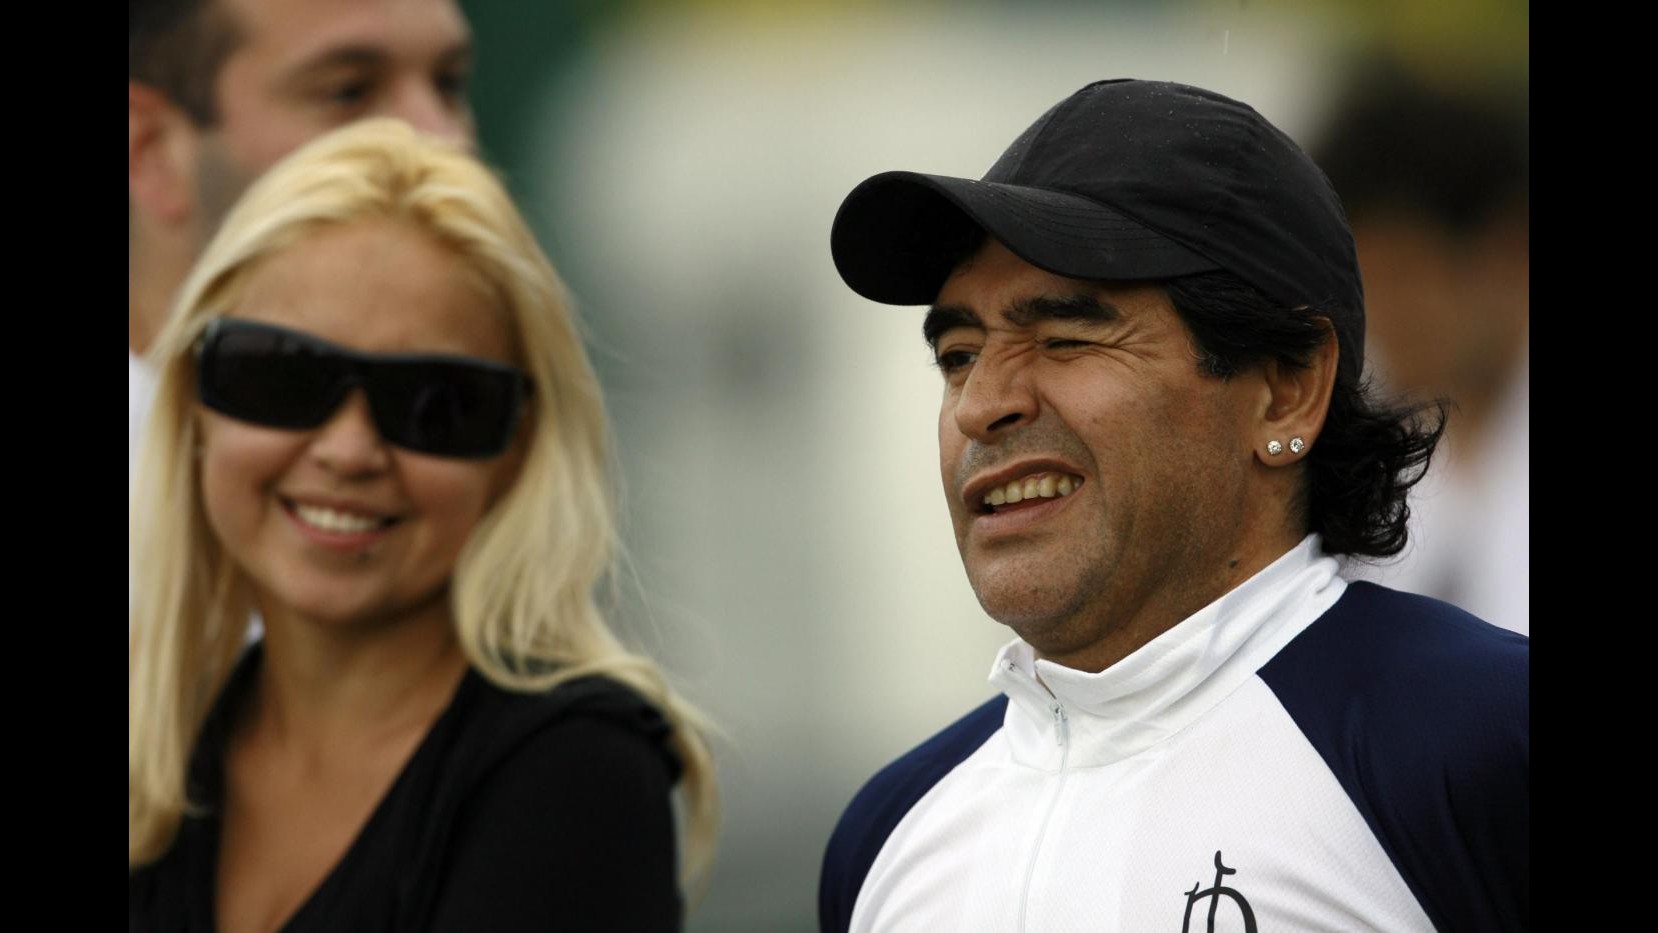 Argentina, gambizzato a Buenos Aires suocero di Maradona. Per stampa locale vendetta della ex?